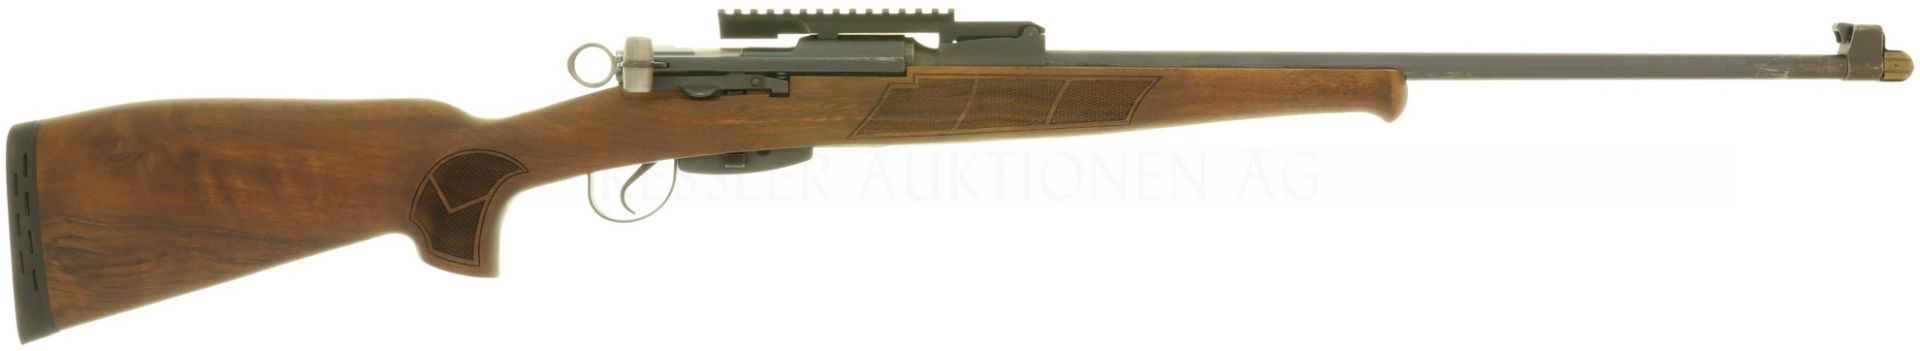 Jagdbüchse, K31-System, Kal. 7.5x55mm